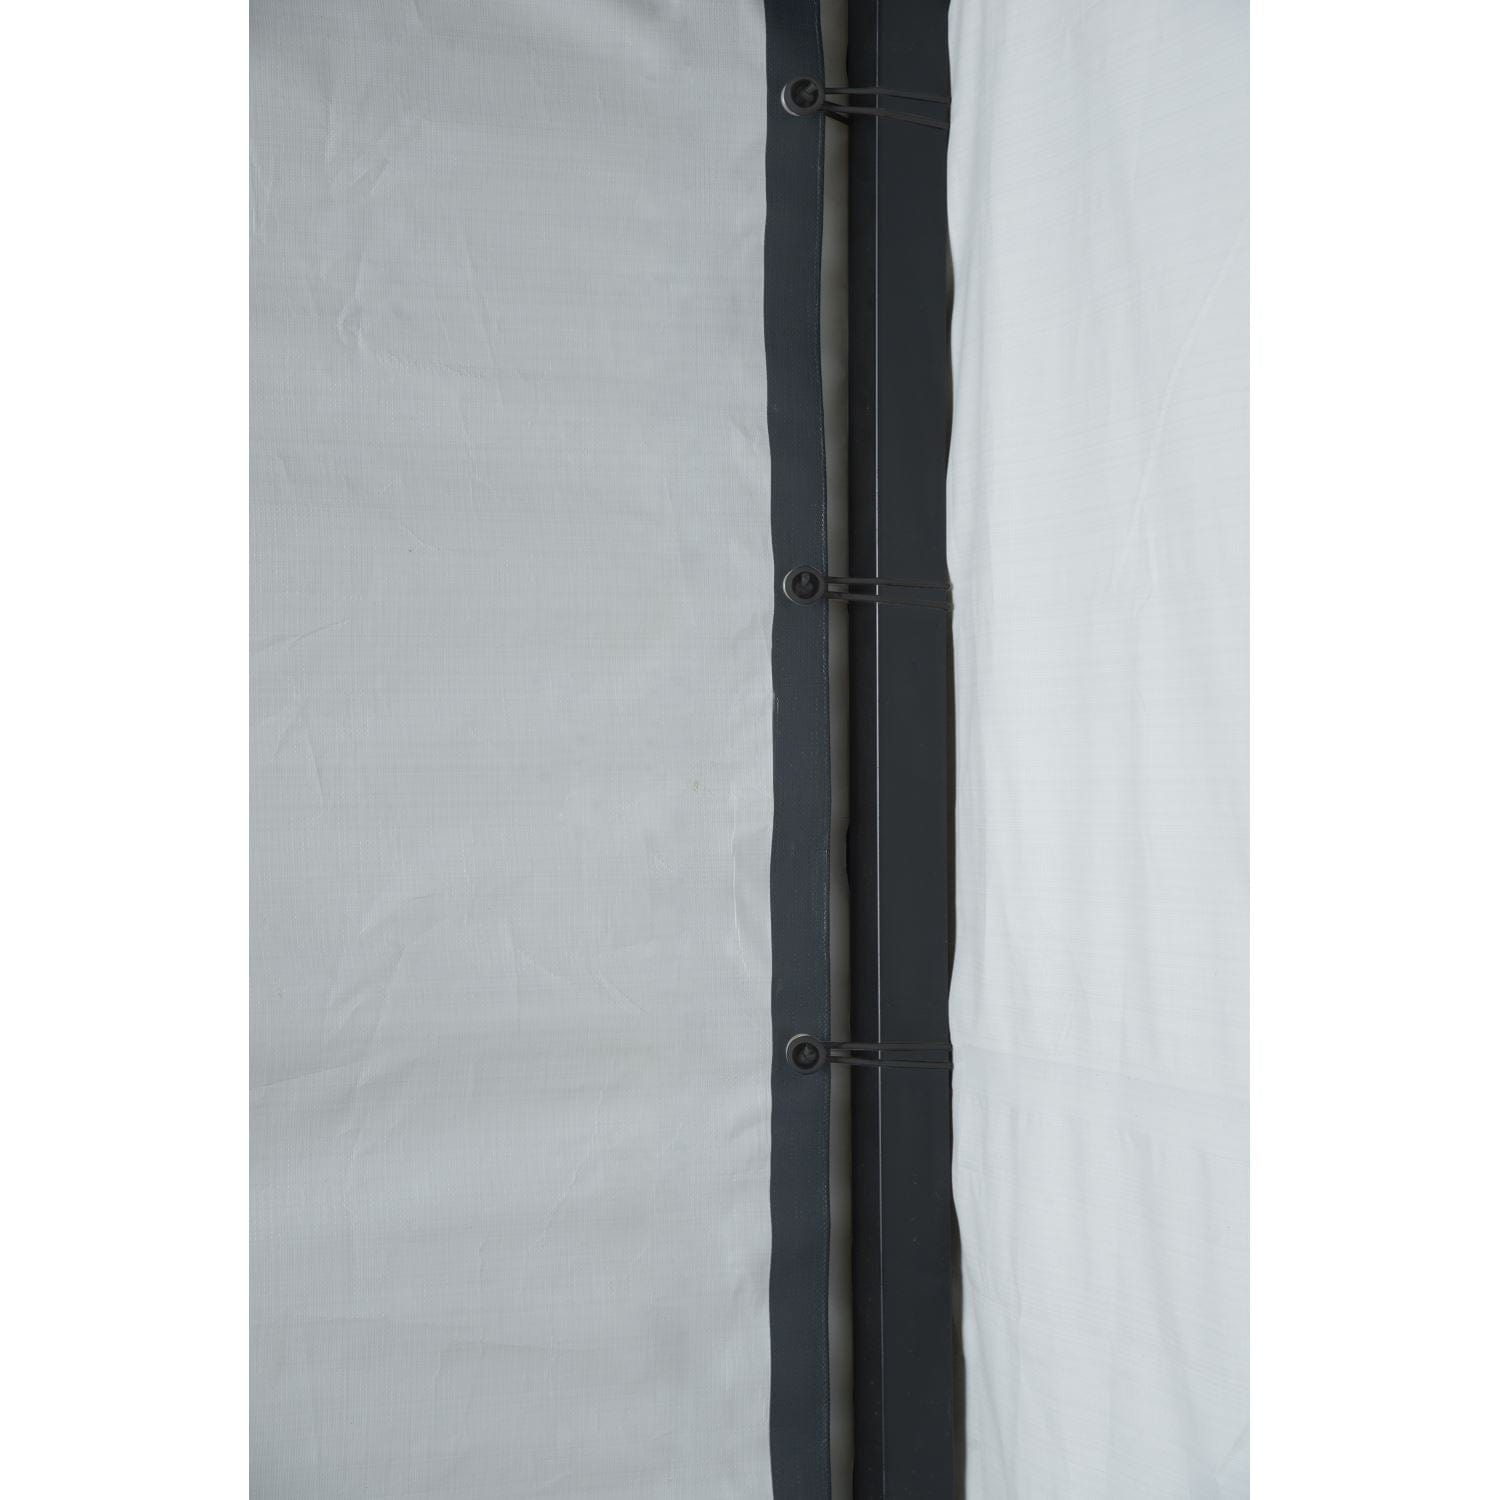 Arrow Carport Accessories Arrow | Enclosure Kit for 10x15x7 ft Carport Grey 10182